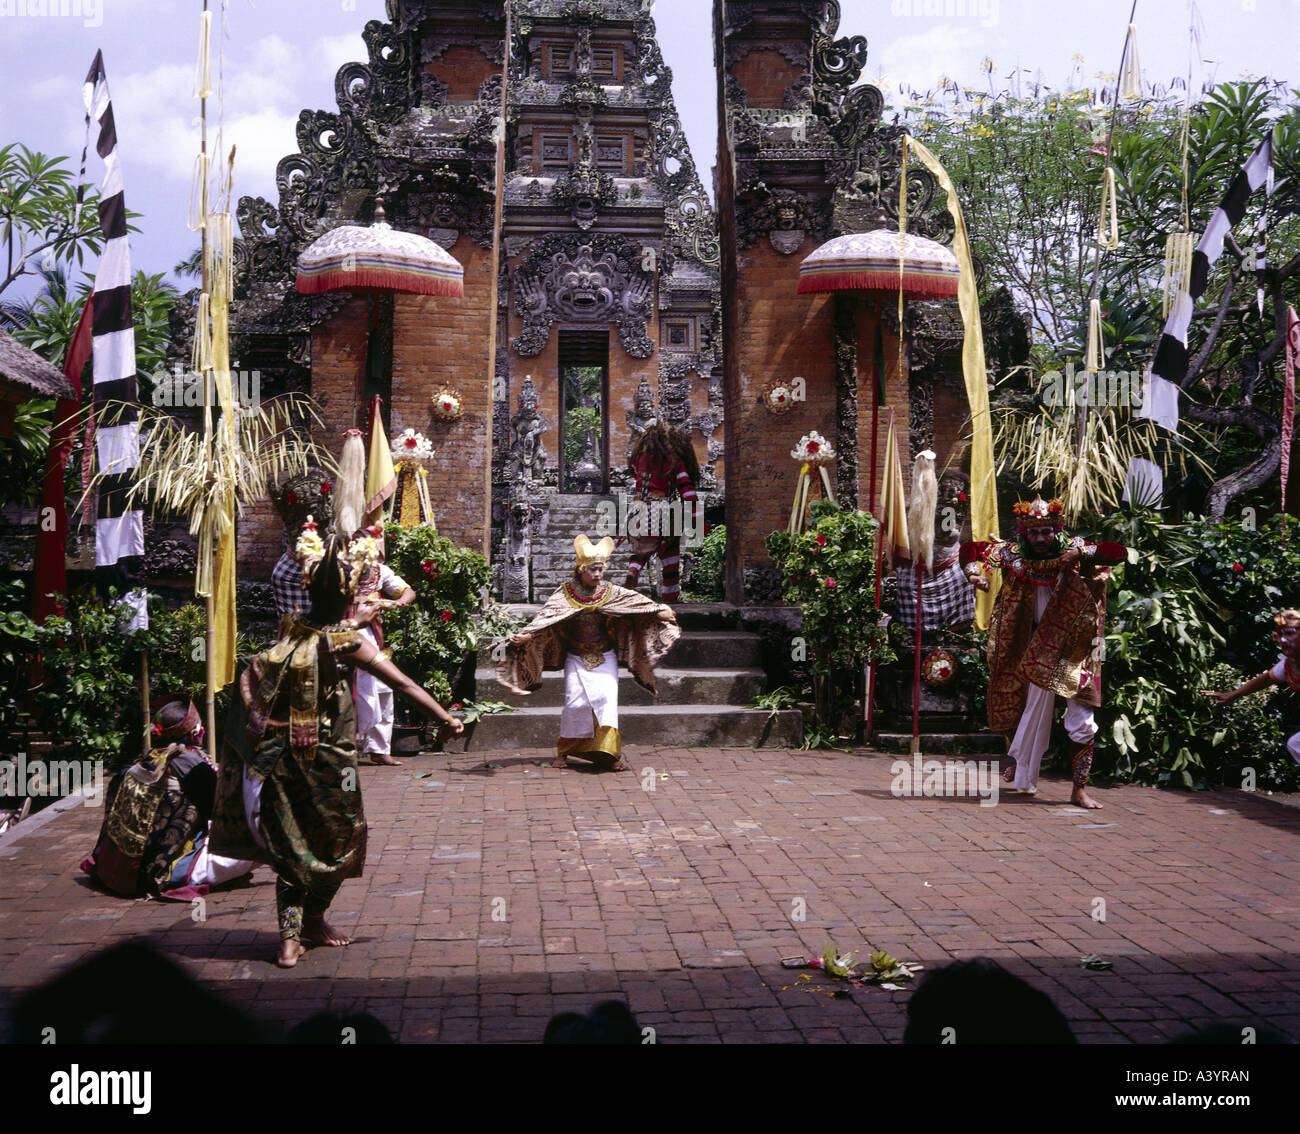 Viajes / geografía, Indonesia, Bali, tradición / folclore, danza Barong, aparición de Dewi Kunti, Asia Sudoriental, mitología, criatura mítica, baile, ceremonia, Batulan, Foto de stock